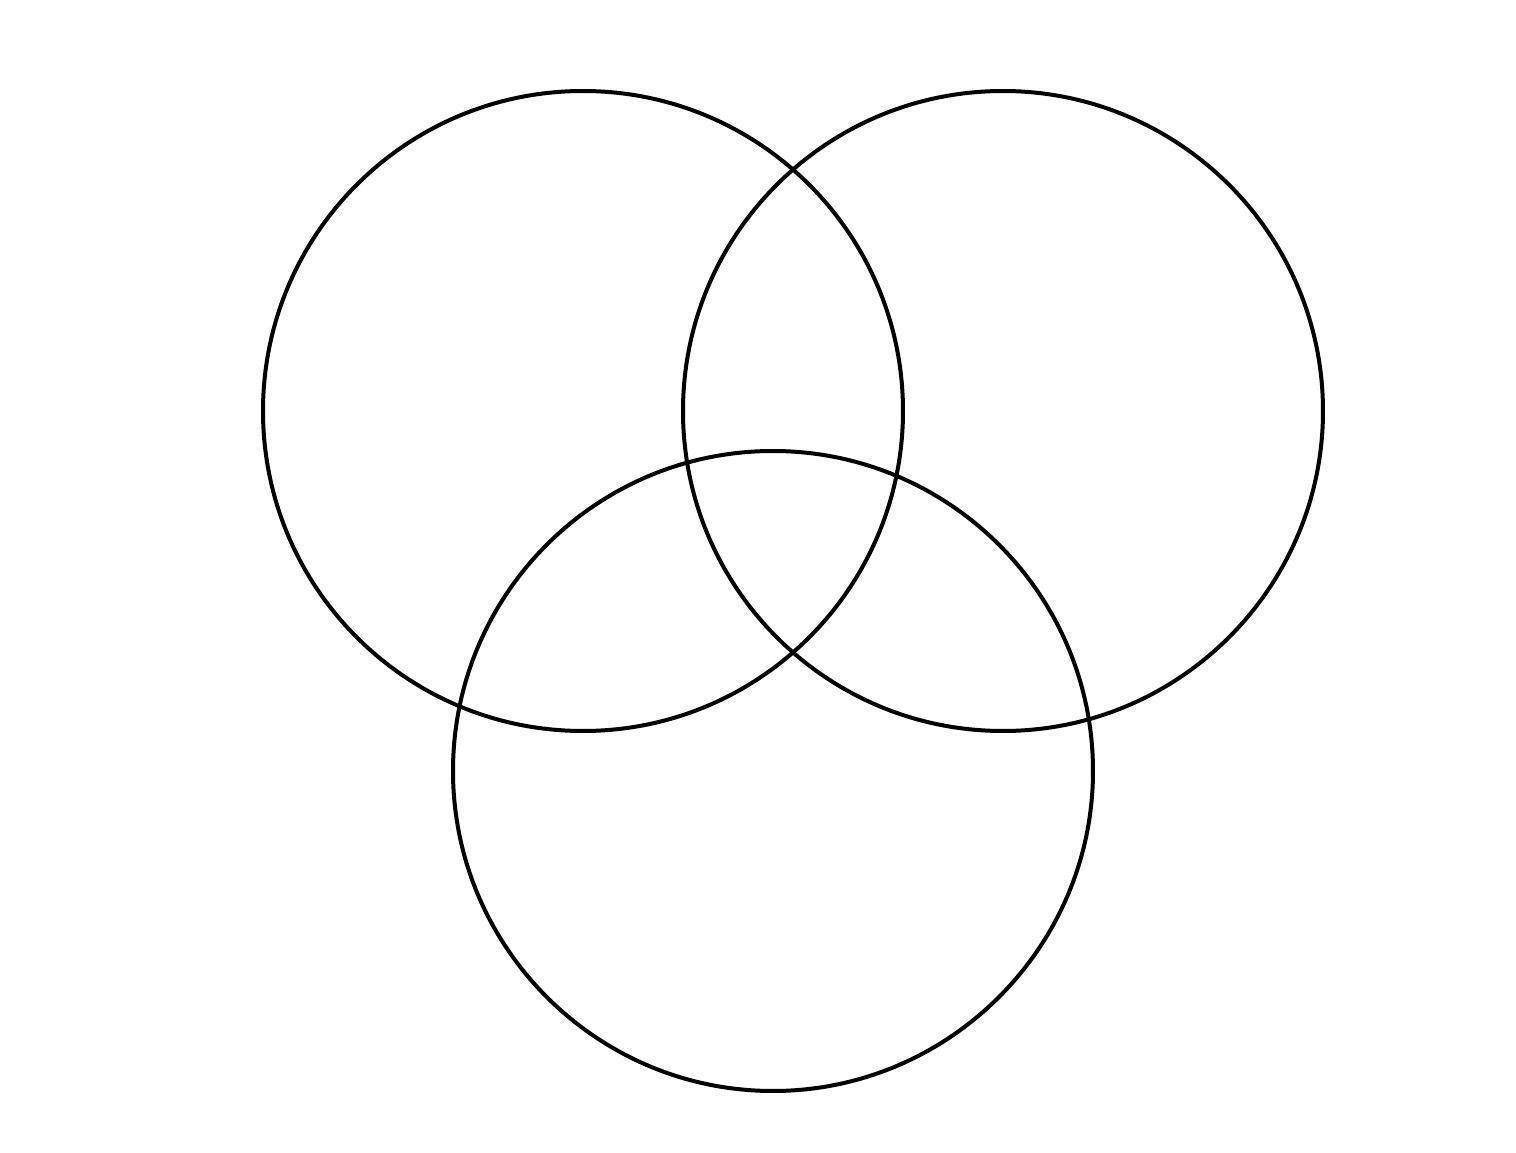 Круги едят других кругов. Круги Эйлера. Круги Эйлера Венна. Venn diagram 3. Диаграмма Венна три круга.